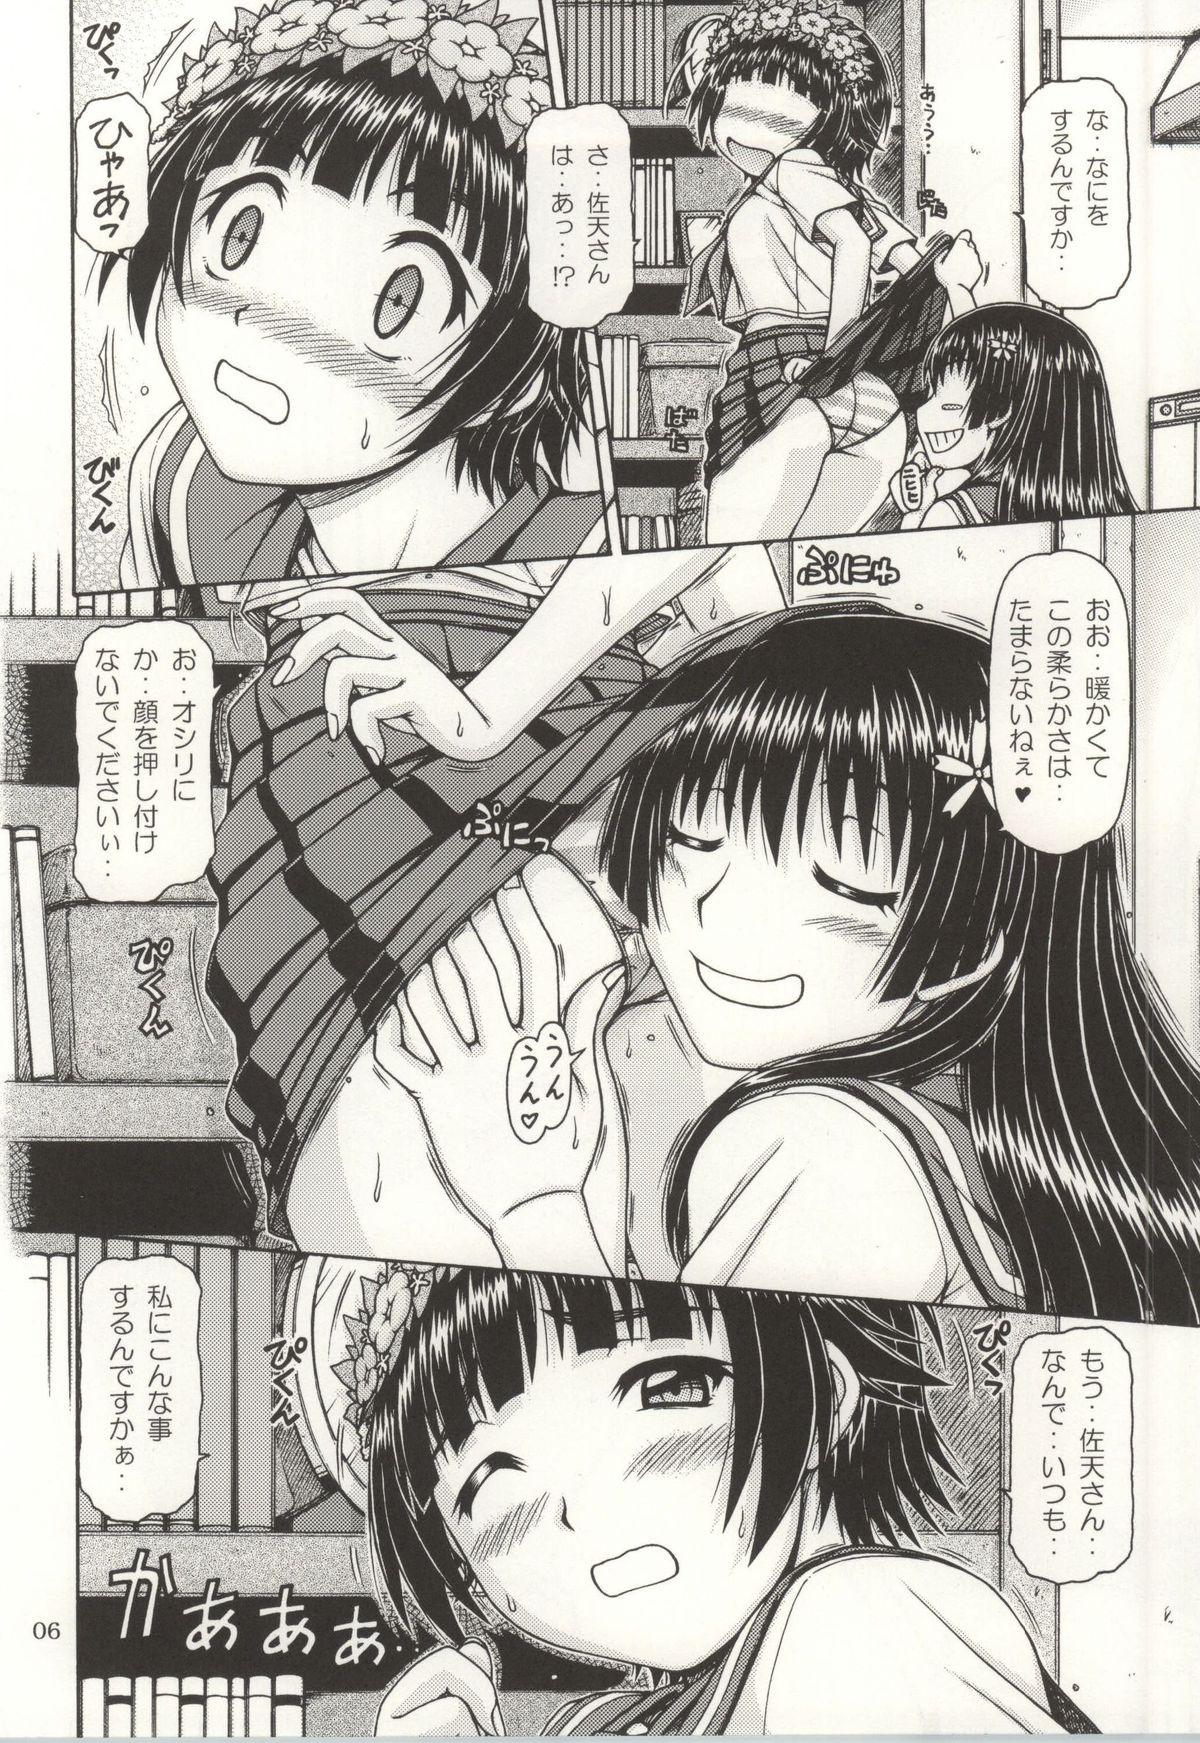 Exhibitionist ONE-SEVEN+ Vol.01 - Toaru kagaku no railgun Toaru majutsu no index Free Rough Sex - Page 4